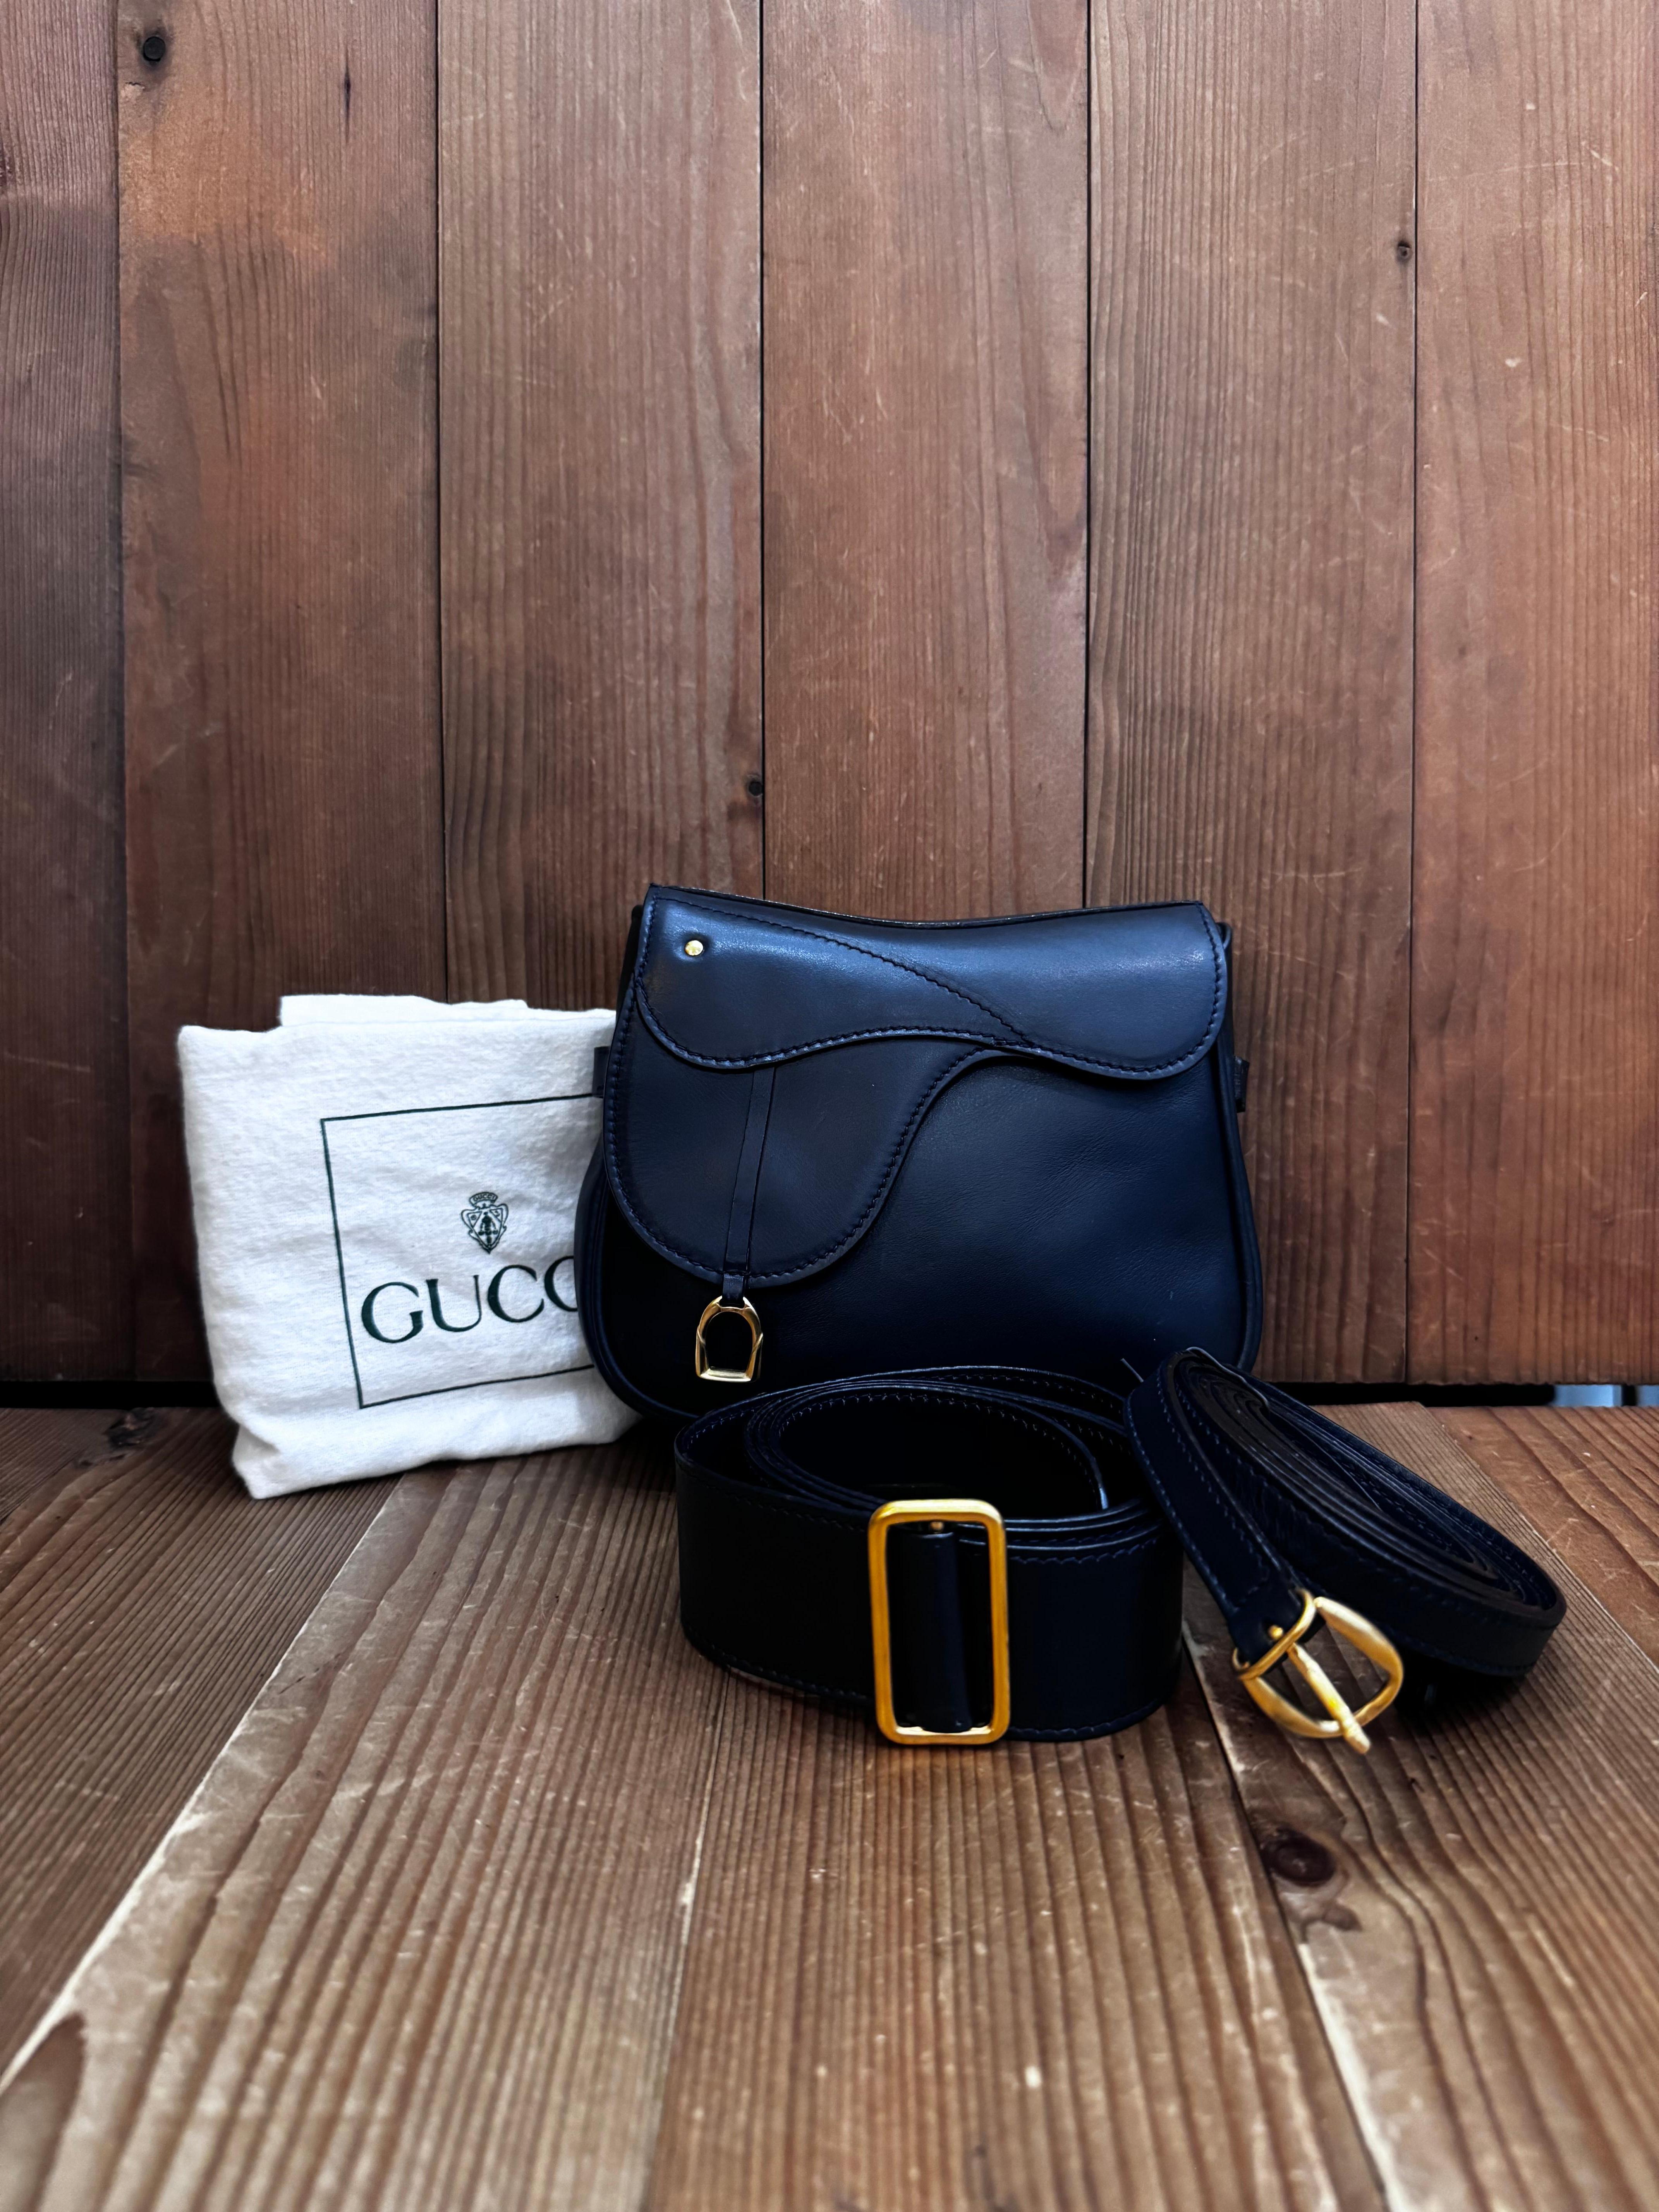 Diese Mini-Satteltasche im Vintage-Stil von GUCCI ist aus glattem Kalbsleder in Marineblau gefertigt und mit goldfarbener Hardware ausgestattet. Die Tasche verfügt über einen abnehmbaren Schulterriemen und einen Gürtel aus demselben Leder, der als